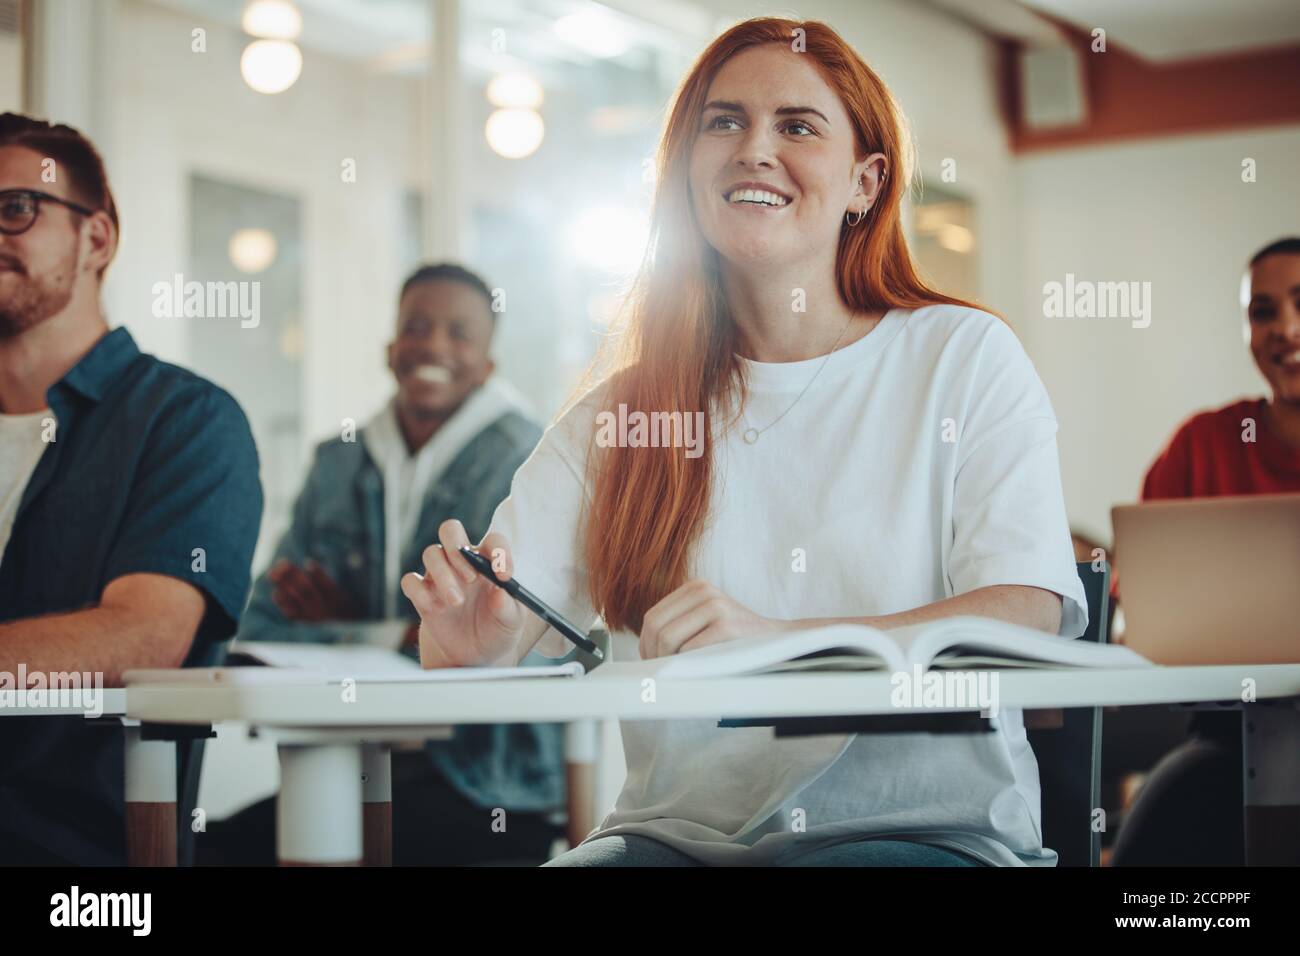 Un joli étudiant qui fait attention lors d'une conférence. Fille à l'écoute de l'enseignant et souriante assis en classe. Banque D'Images